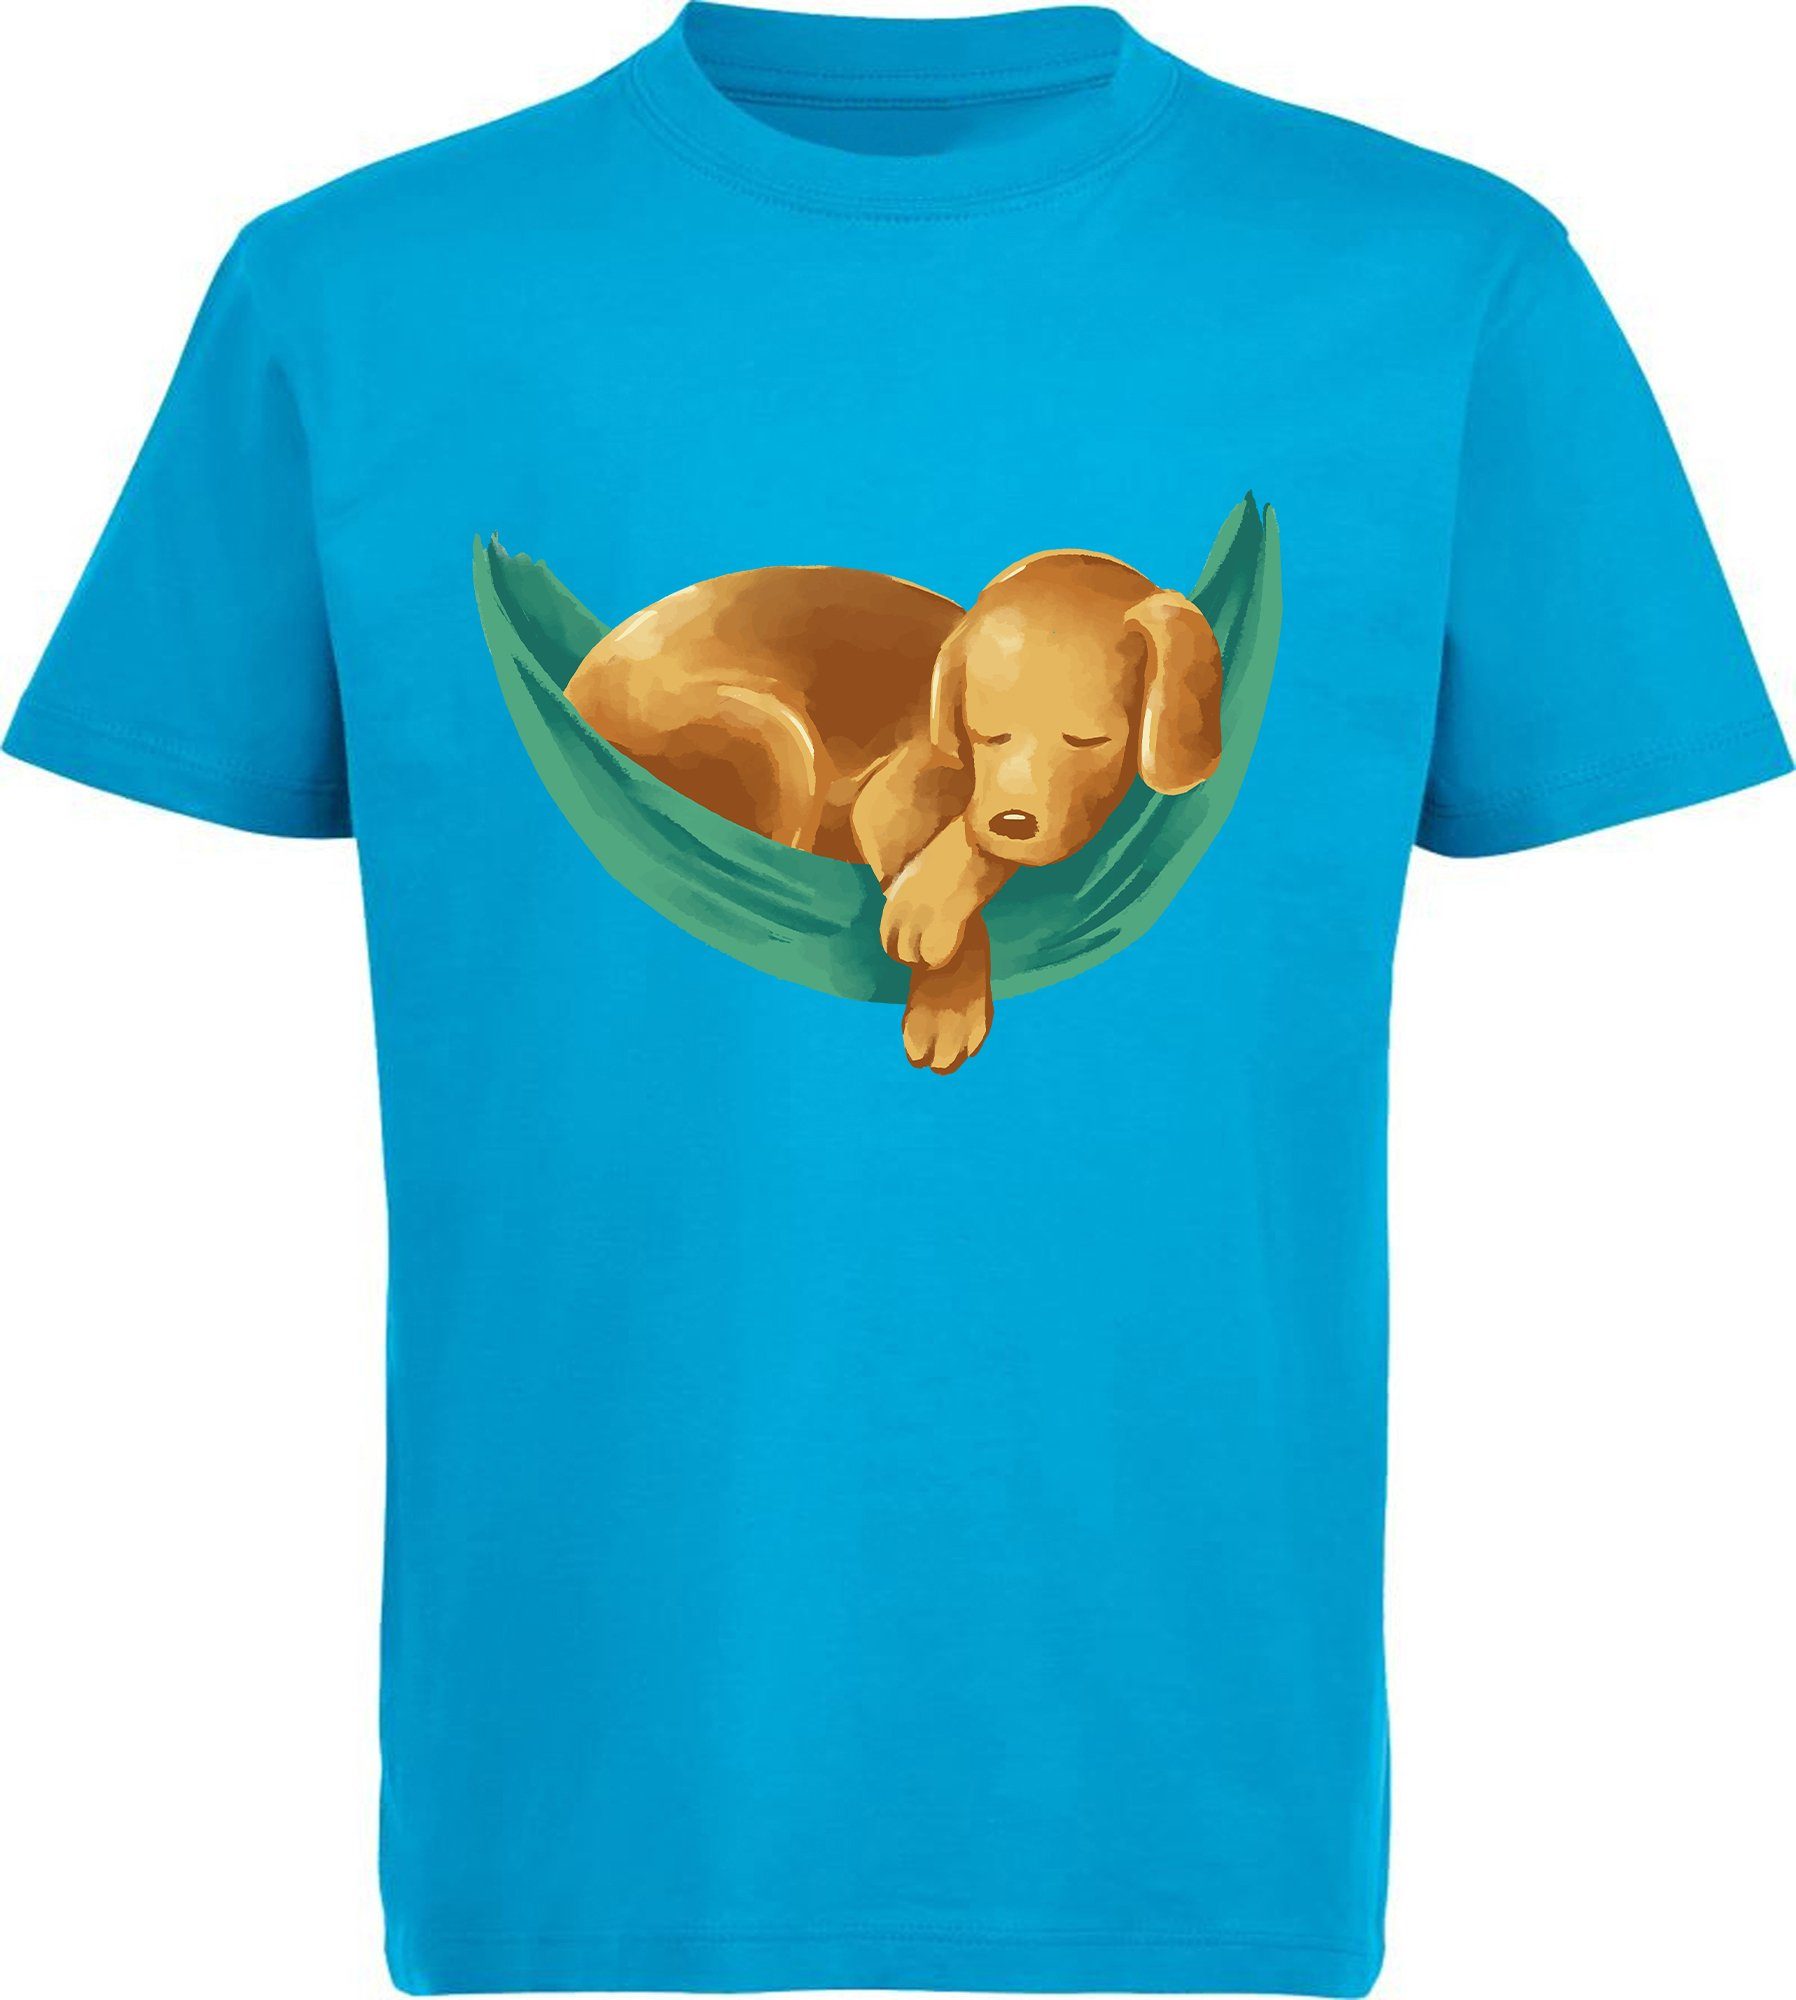 MyDesign24 T-Shirt Kinder Hunde Print Shirt bedruckt - Labrador Welpe in Hängematte Baumwollshirt mit Aufdruck, i245 aqua blau